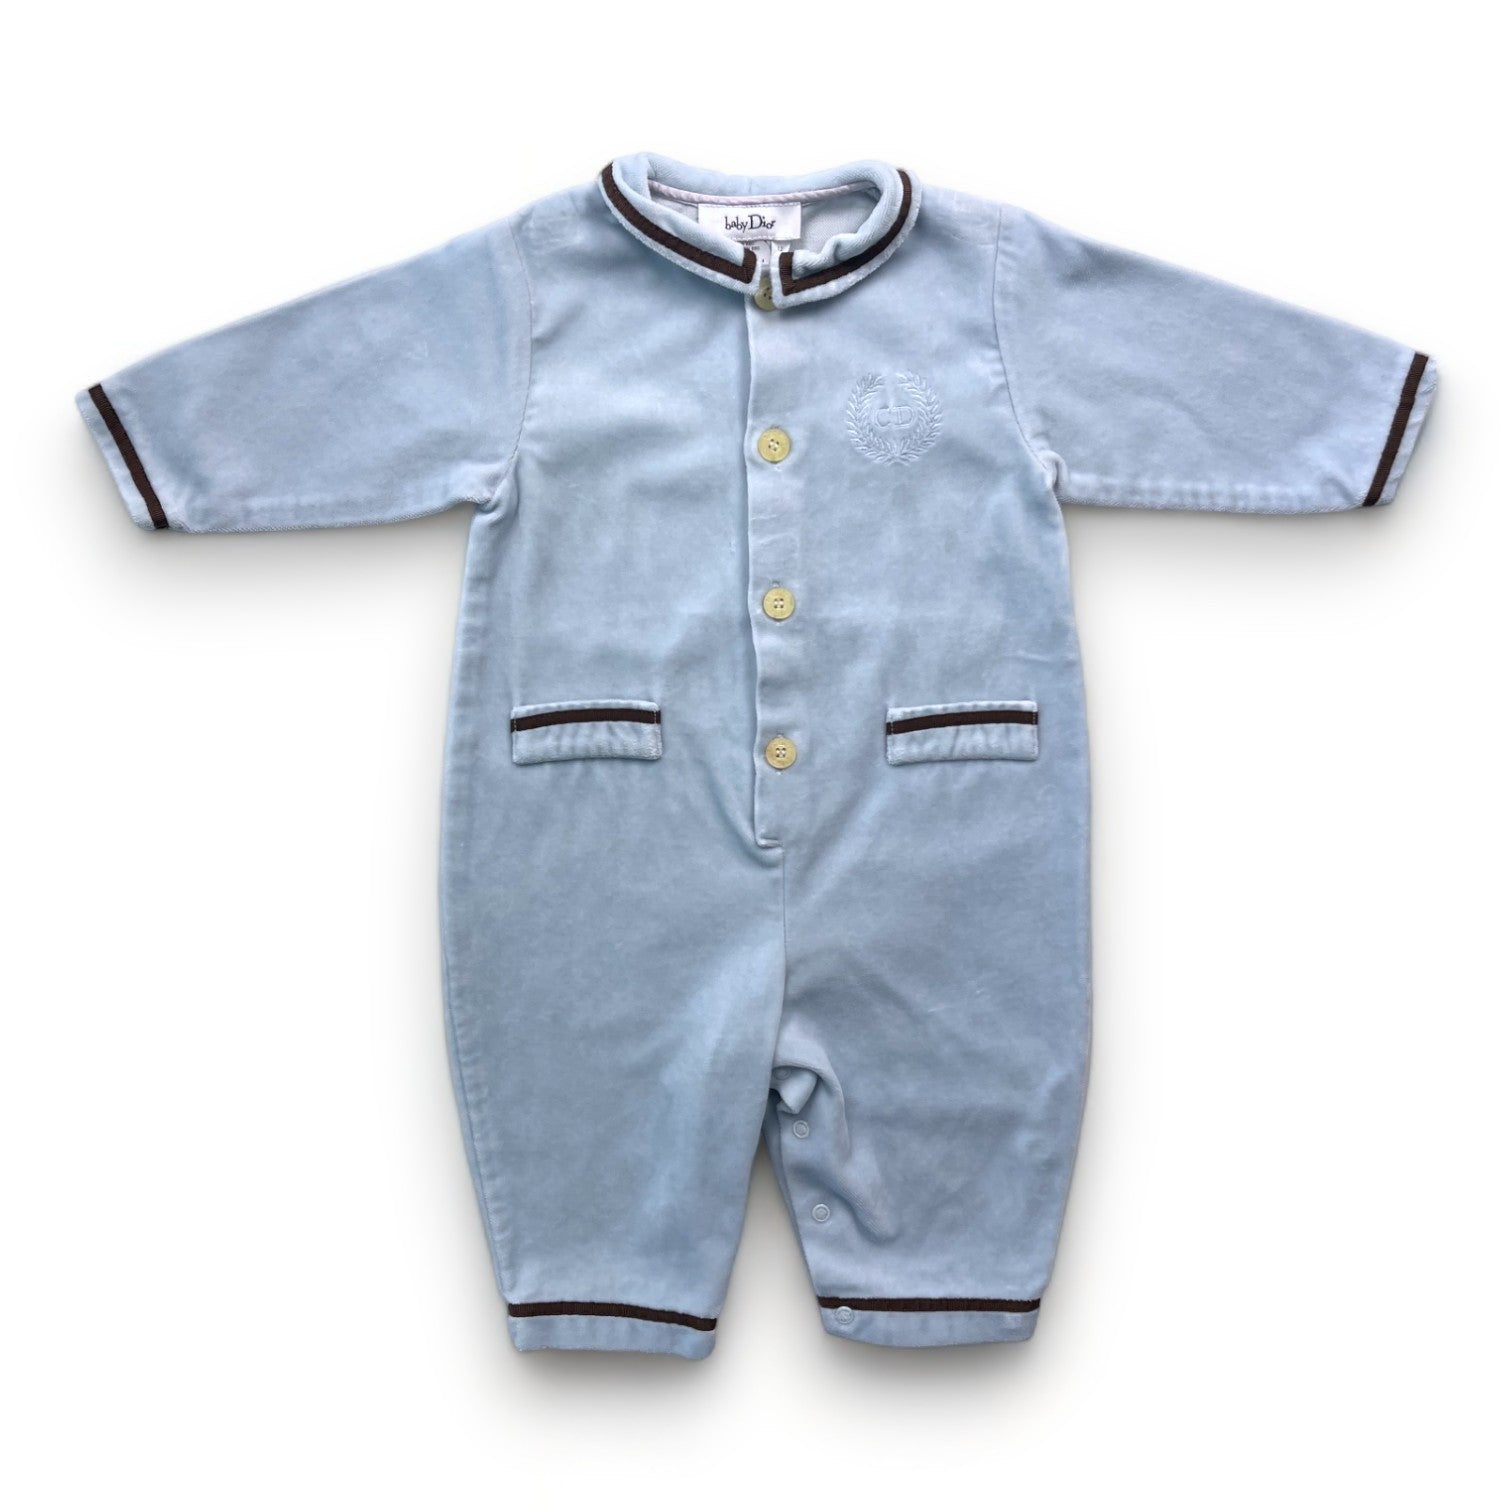 BABY DIOR - Pyjama bleu en velours brodé « CD » - 12 mois